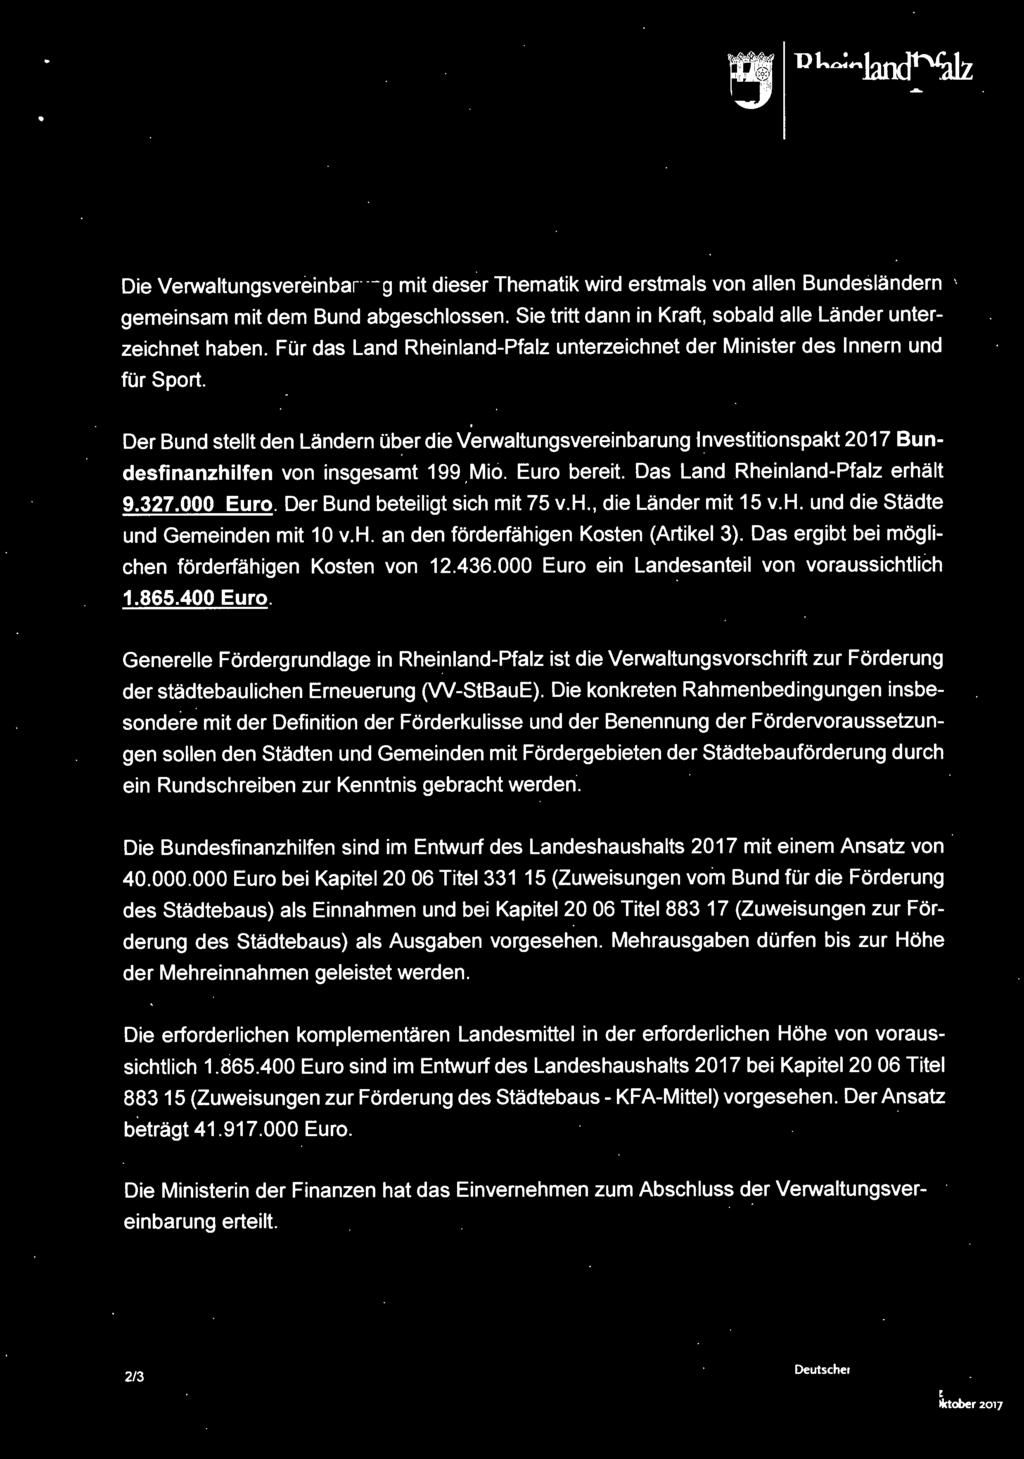 Der Bund stellt den Ländern über die Verwaltungsvereinbarung Investitionspakt 2017 Bundesfinanzhilfen von insgesamt 199 Mio. Euro bereit. Das Land Hheinland-Pfalz erhält 9.327.000 Euro.